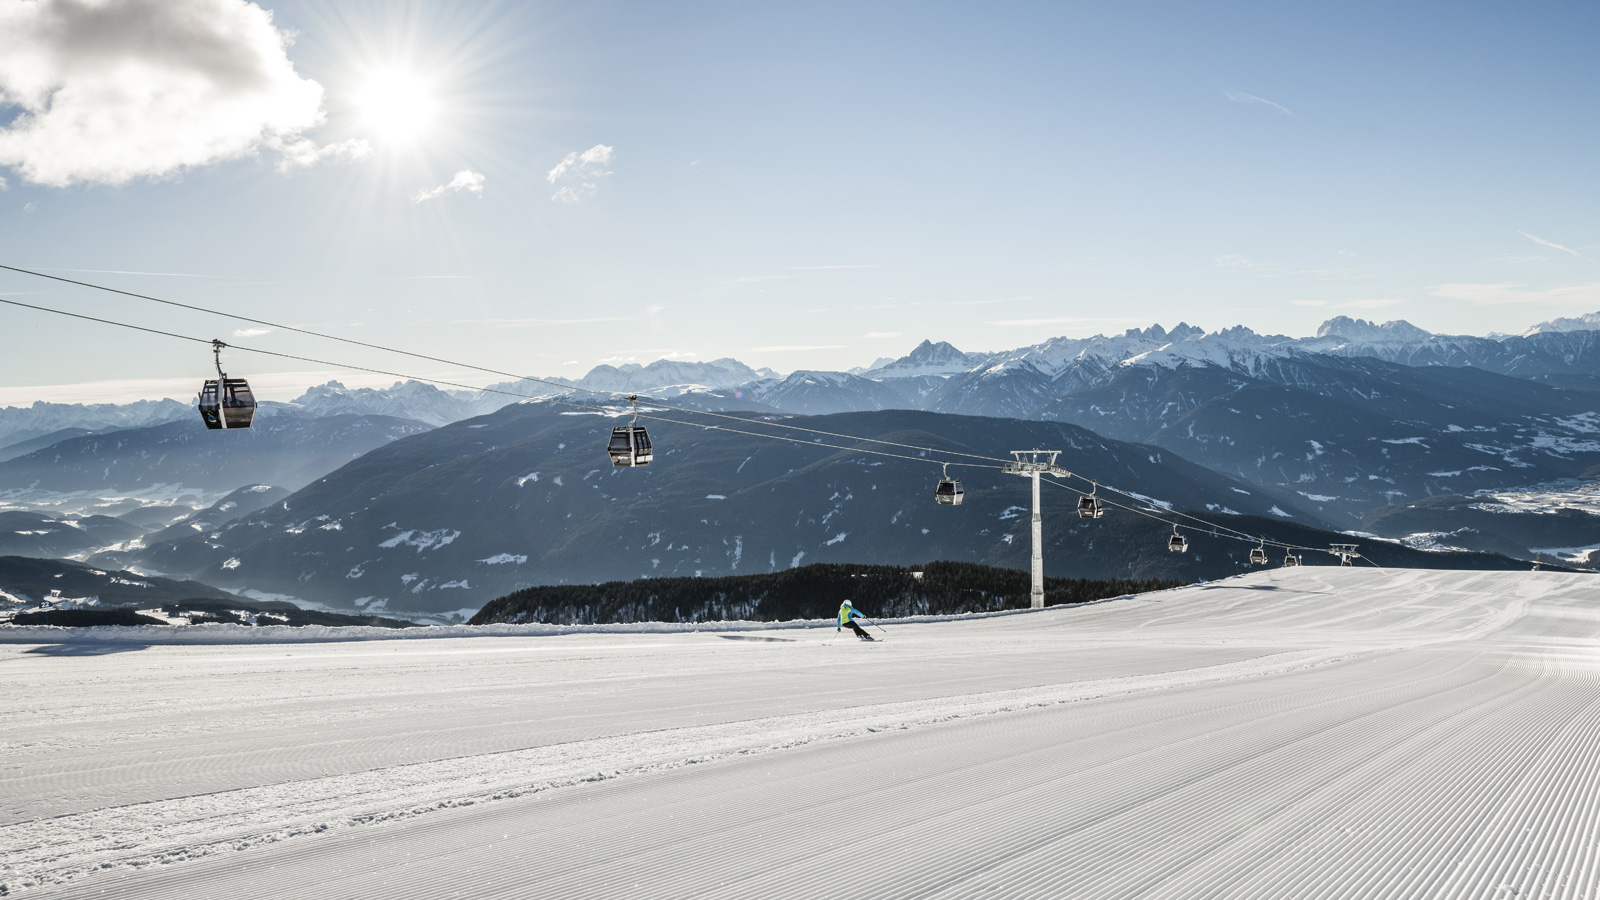 La funivia e le piste da sci nei dintorni dell'Hotel con vista sulle Dolomiti innevate